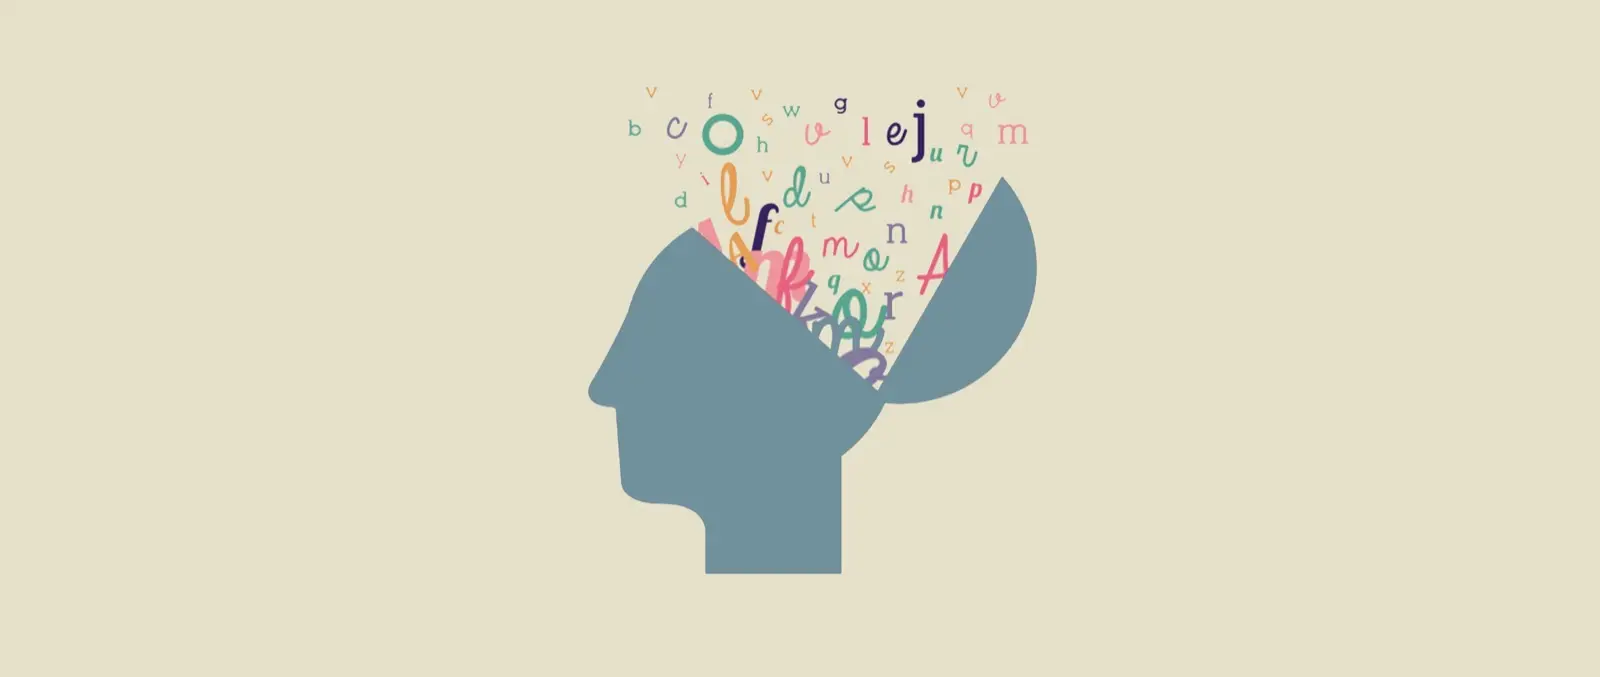 inteligencia memoristica - Qué es el lenguaje memorístico